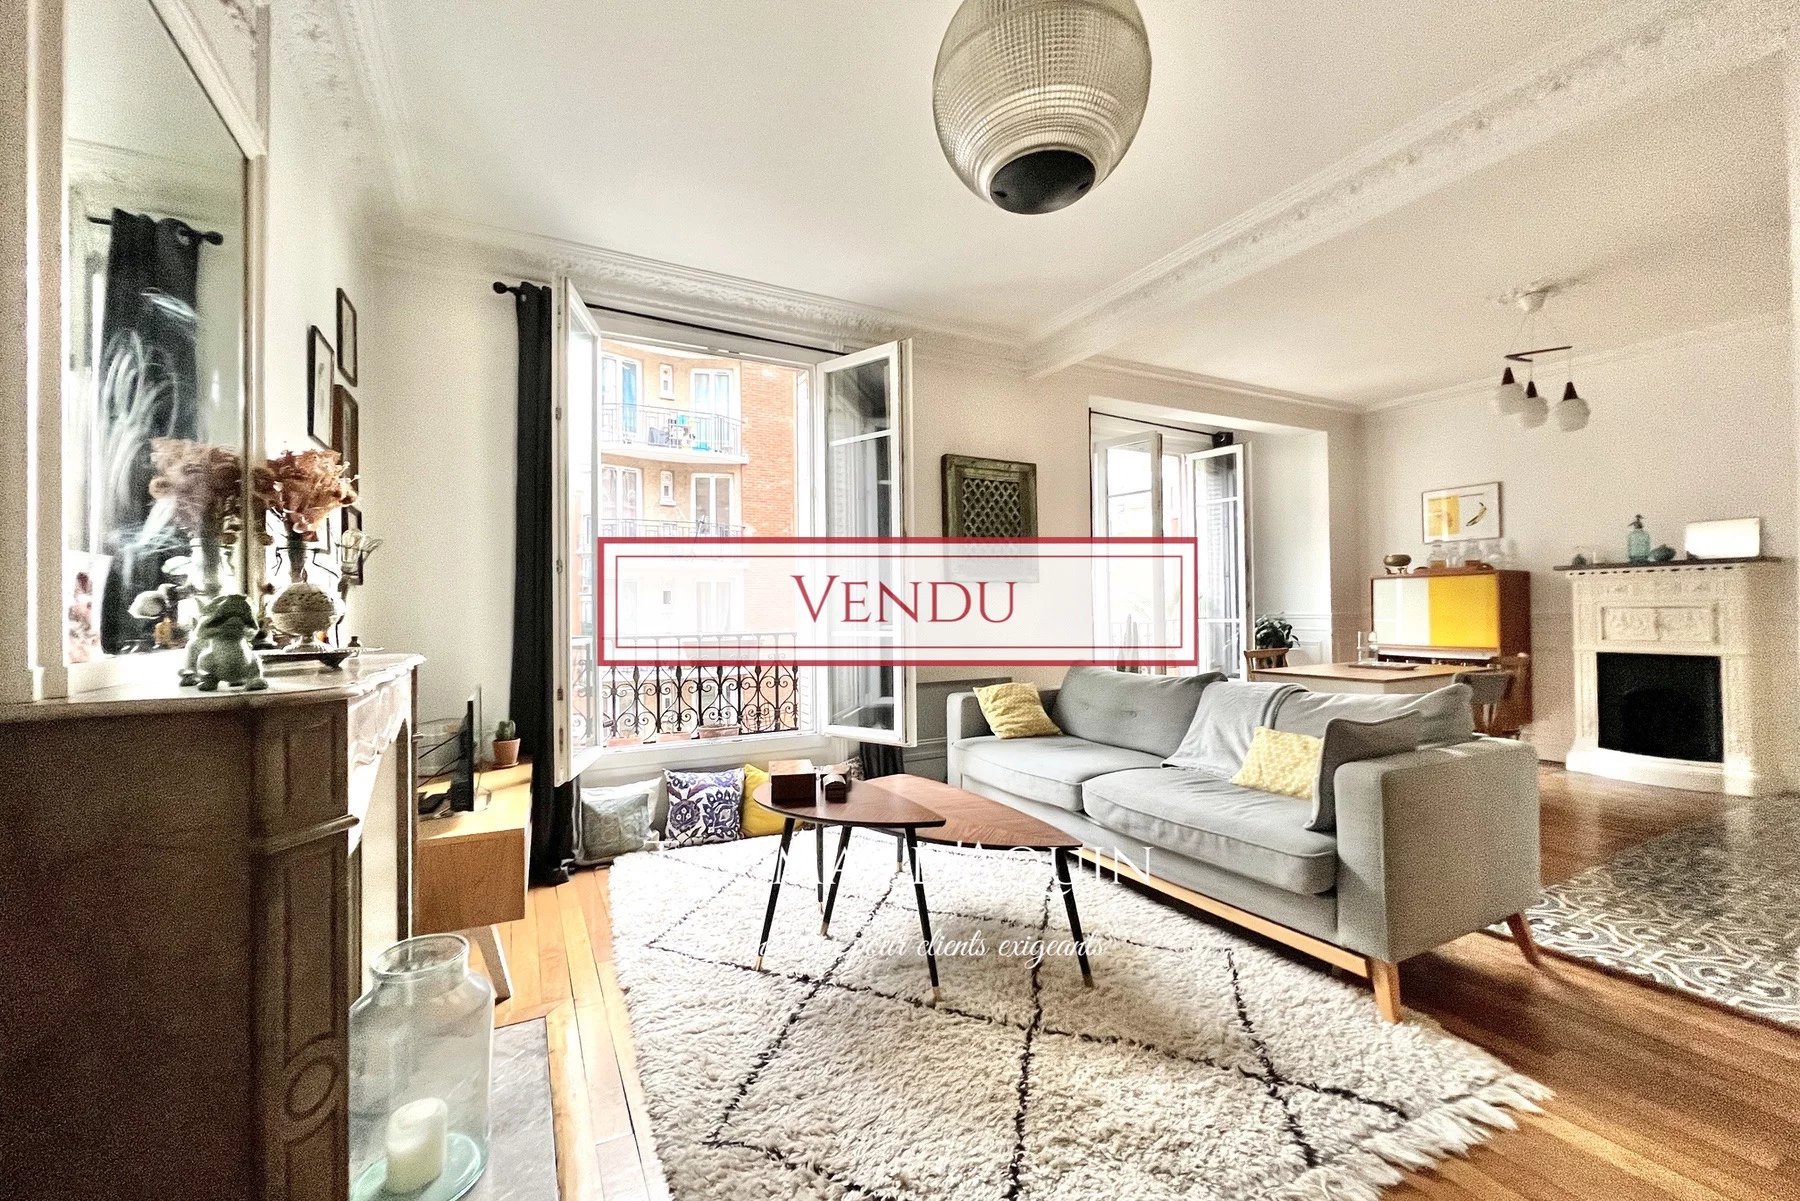 Sale Apartment - Paris 18th (Paris 18ème) Clignancourt